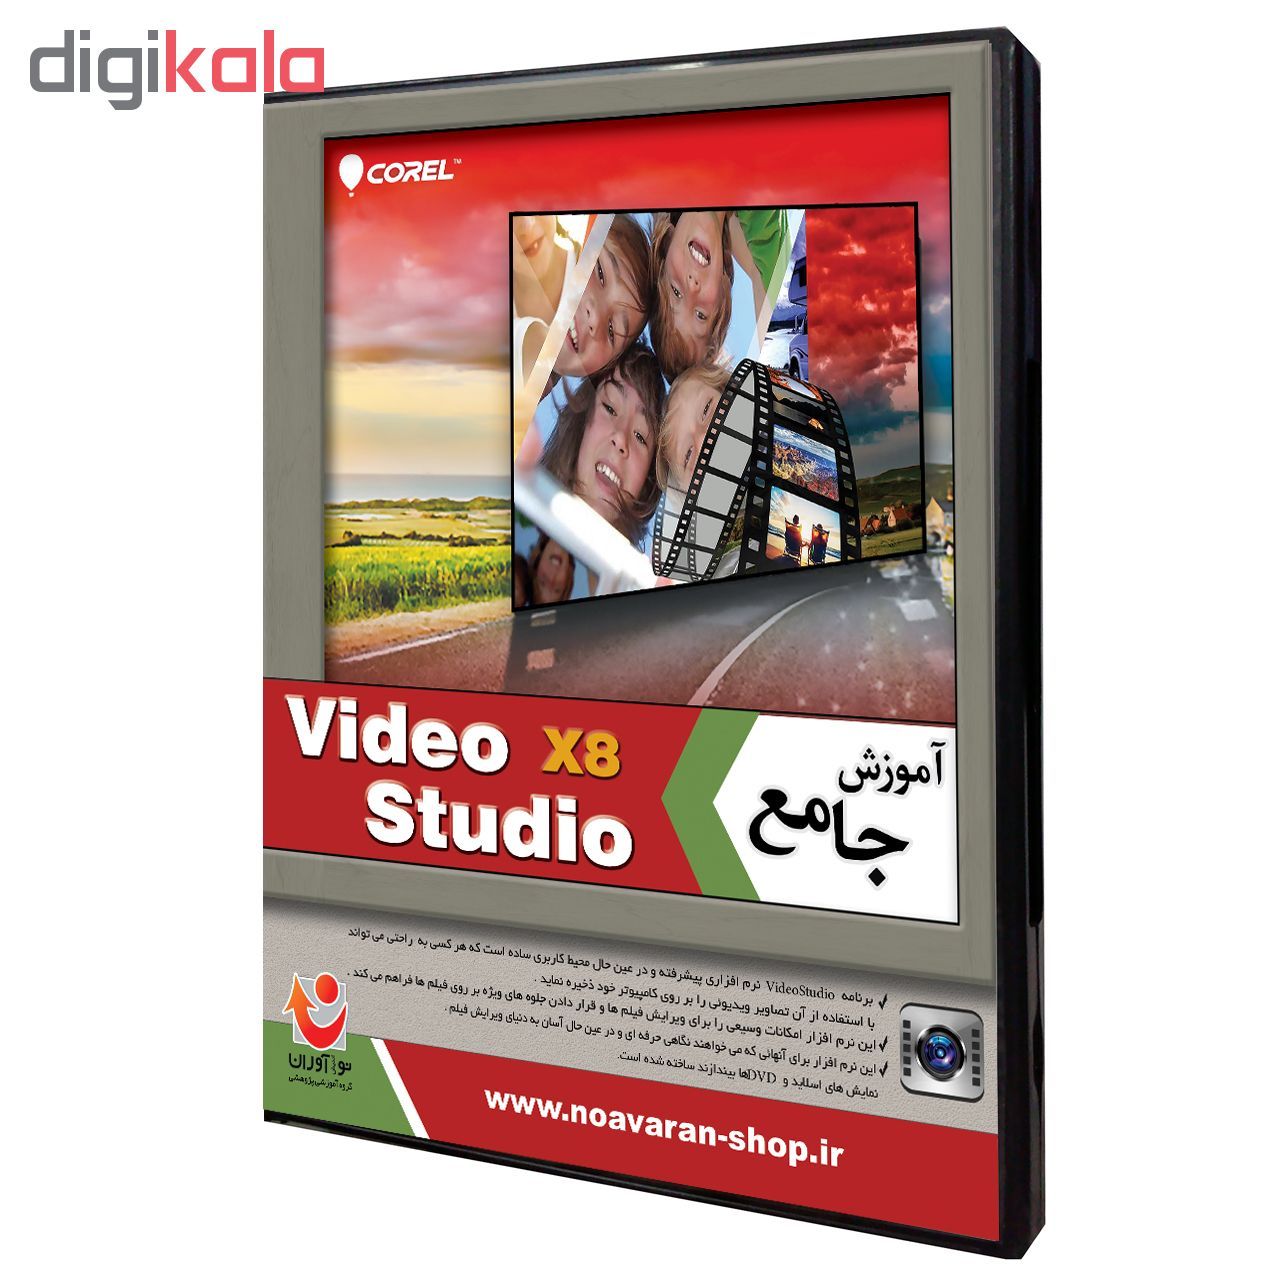 نرم افزار آموزش Corel Video Studio X8 نشر نوآوران